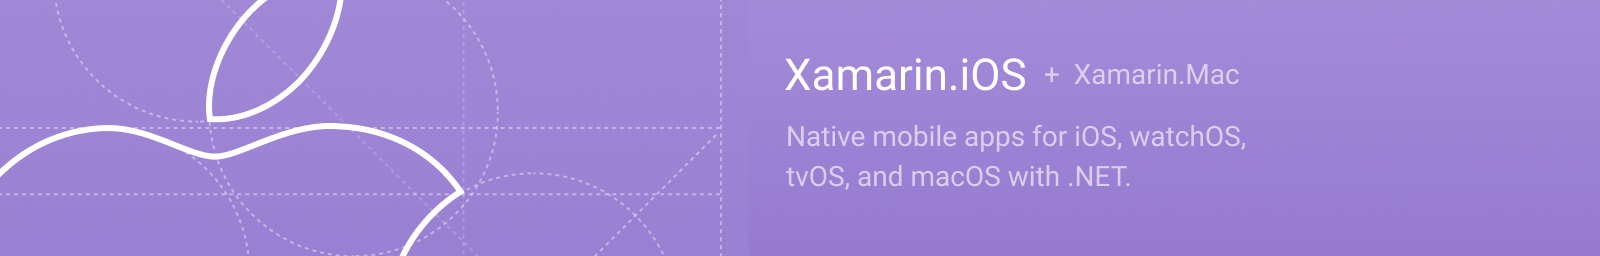 Xamarin.iOS + Xamarin.Mac logo